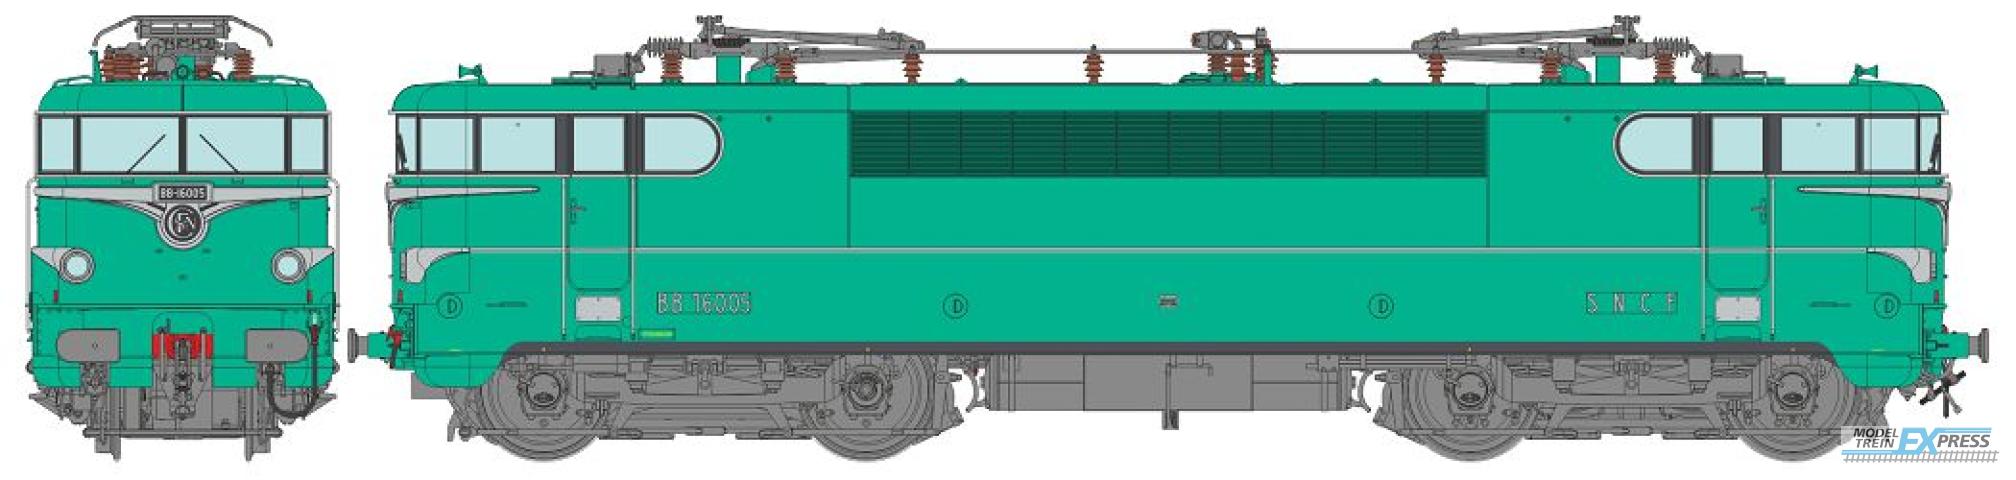 REE models MB-140SAC BB 16005 Original model, STRASBOURG depot Era III - AC Sound Functional Pantos (3 tracks)